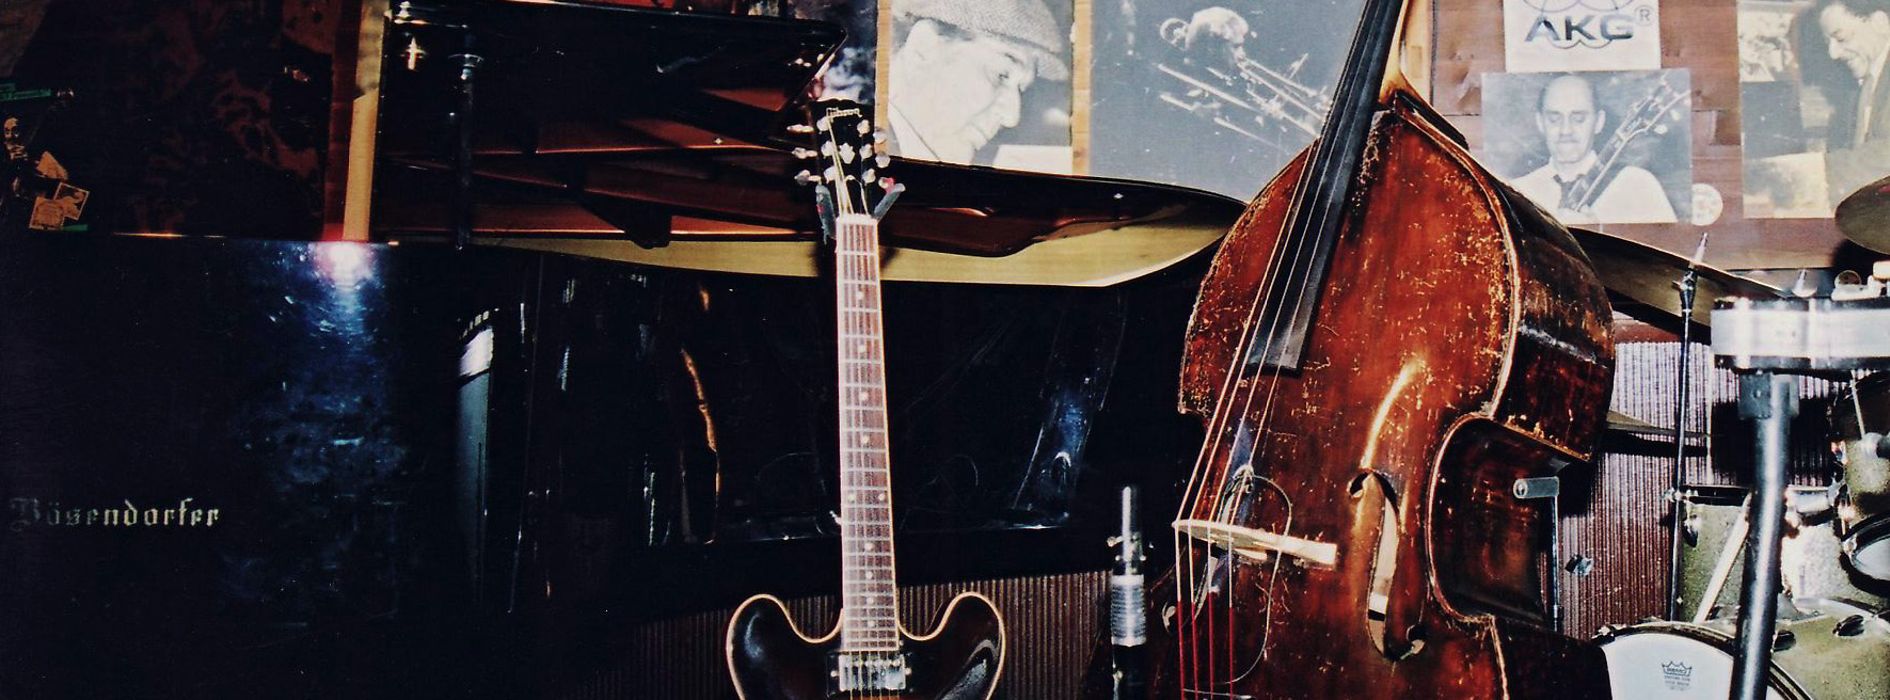 Bühne des Jazzclubs "Jazzland", mit Klavier, Gitarre, Bass, Klarinette